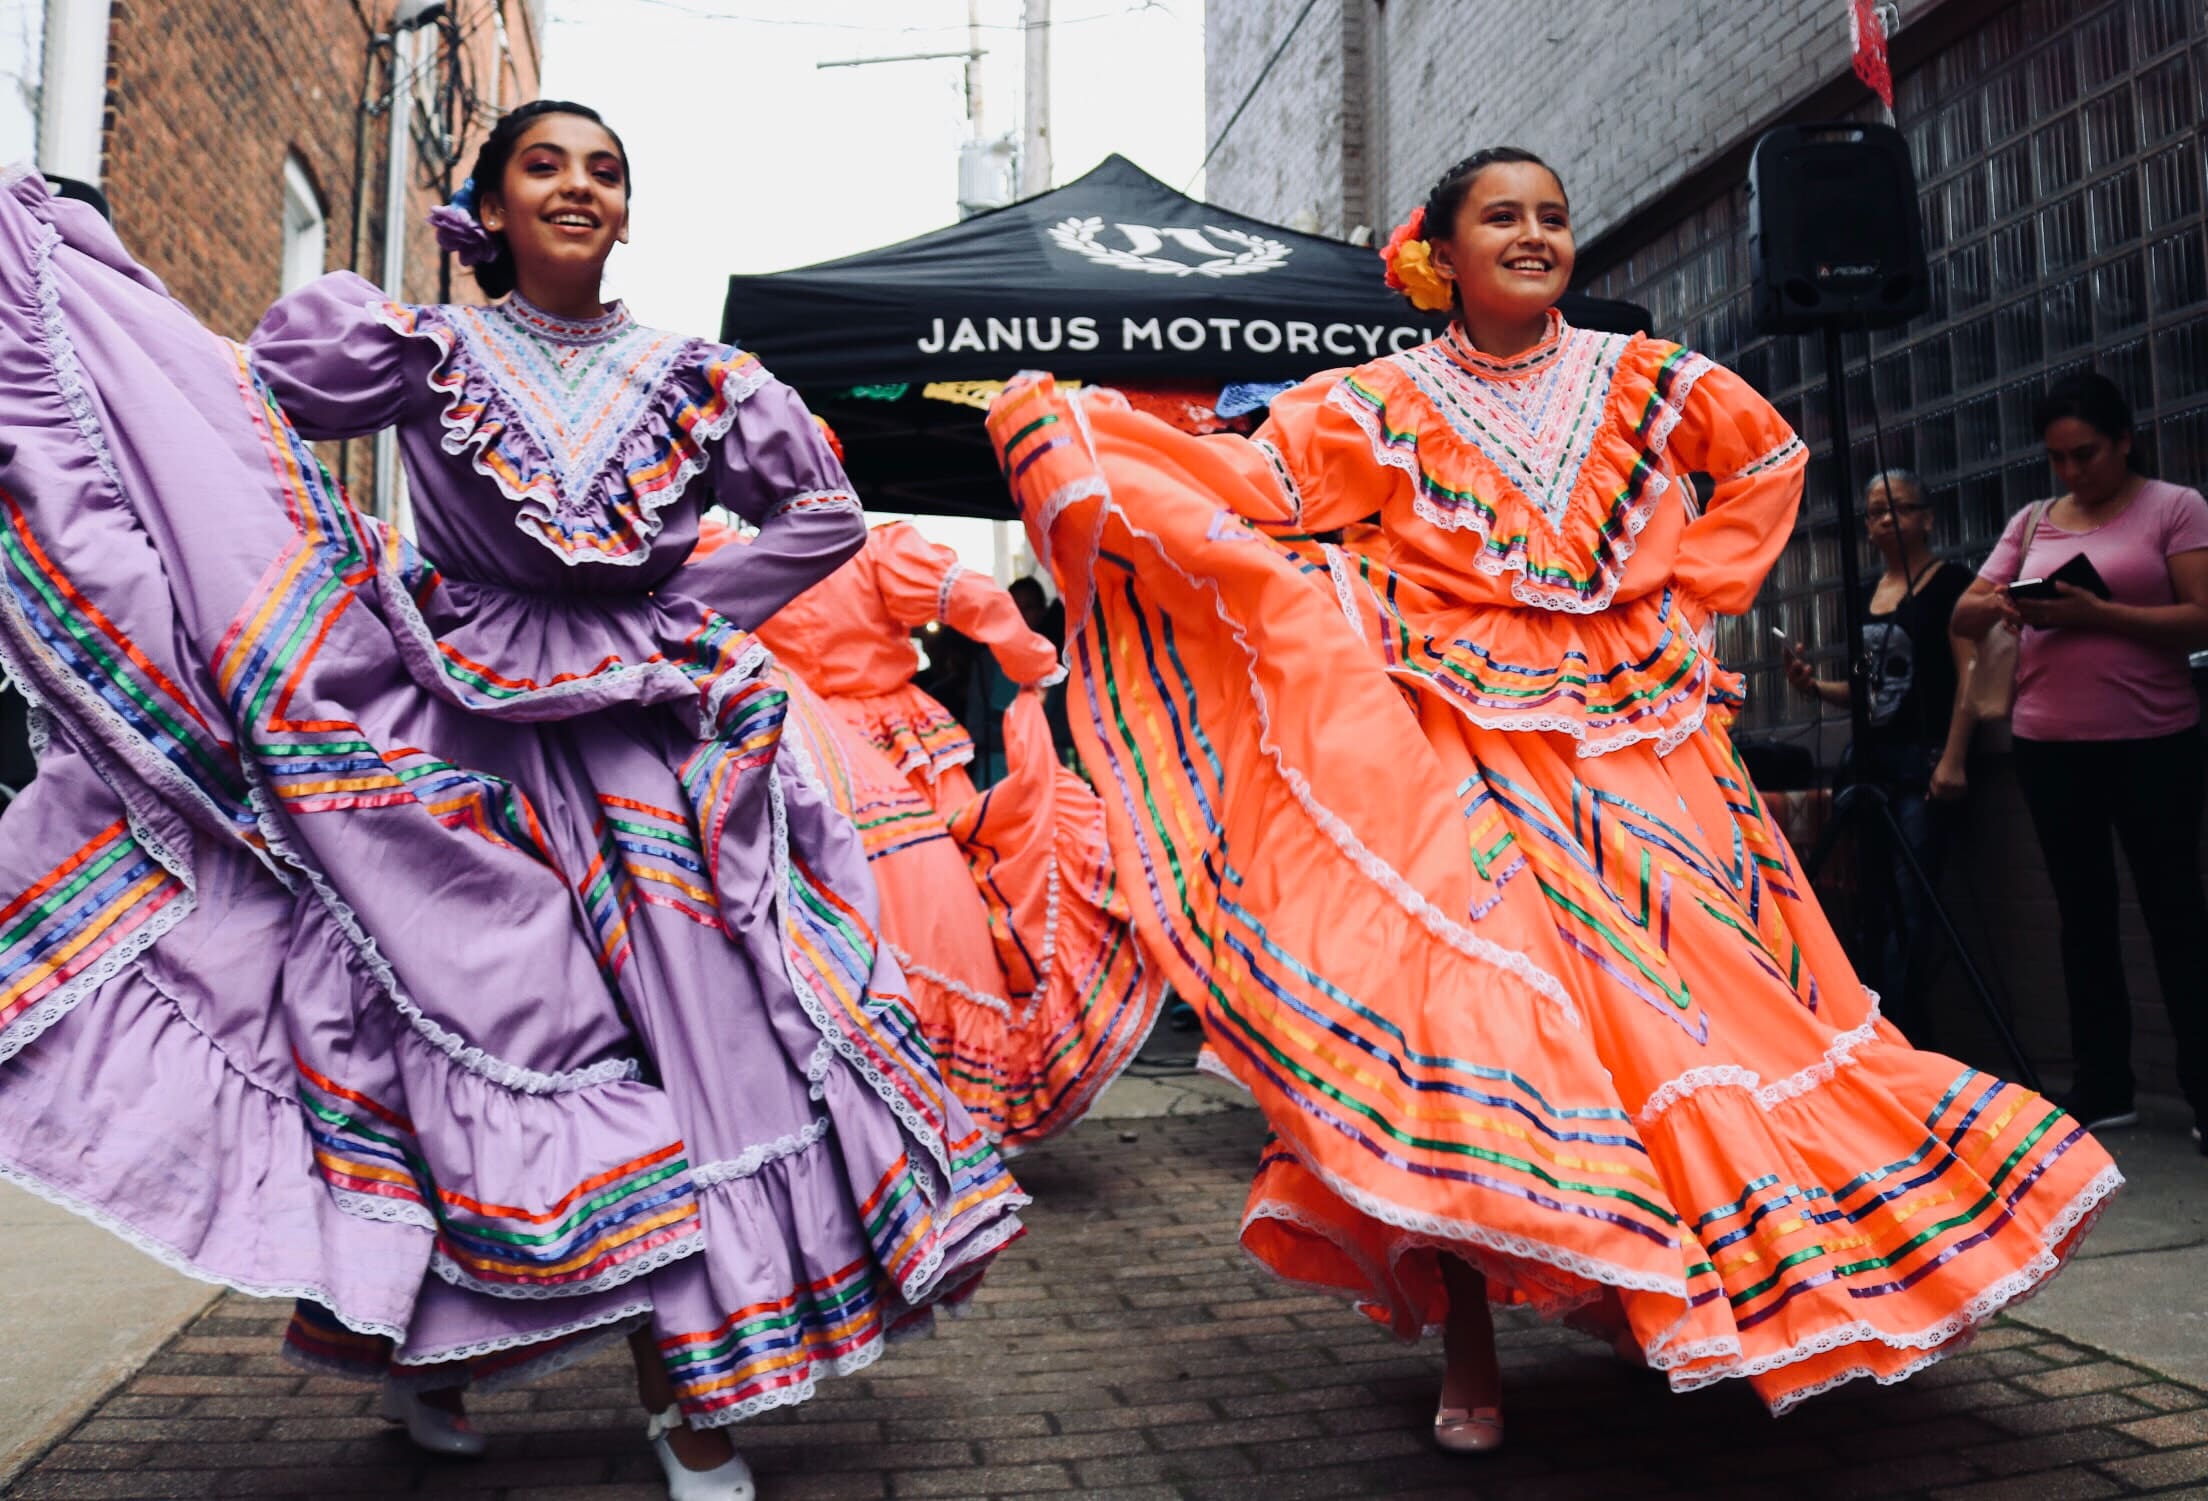 Apprendre l'espagnol sur Instagram - danseuses mexicaines